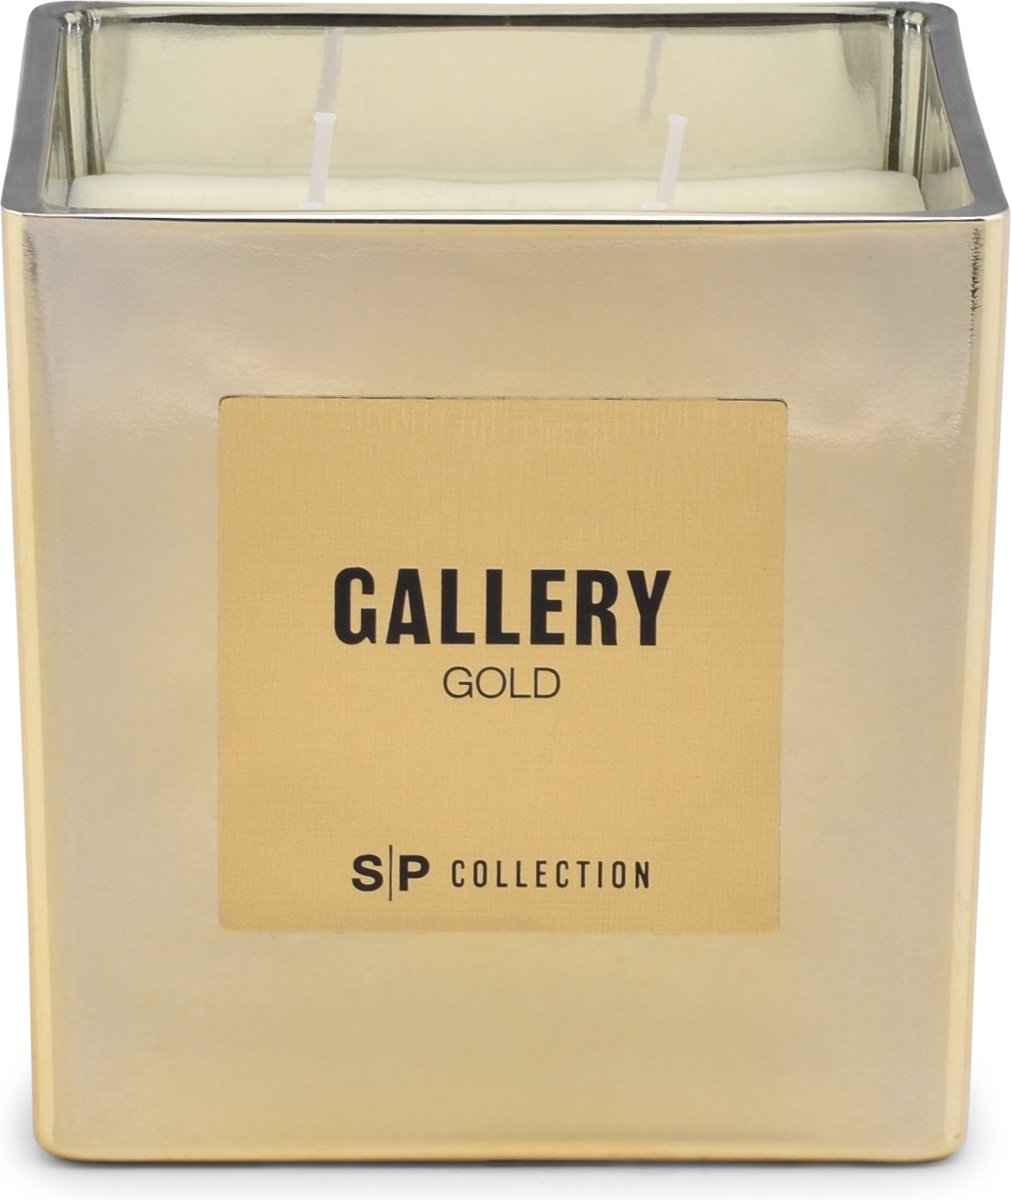 Salt&pepper S|P Collection Geurkaars 460g gold Gallery